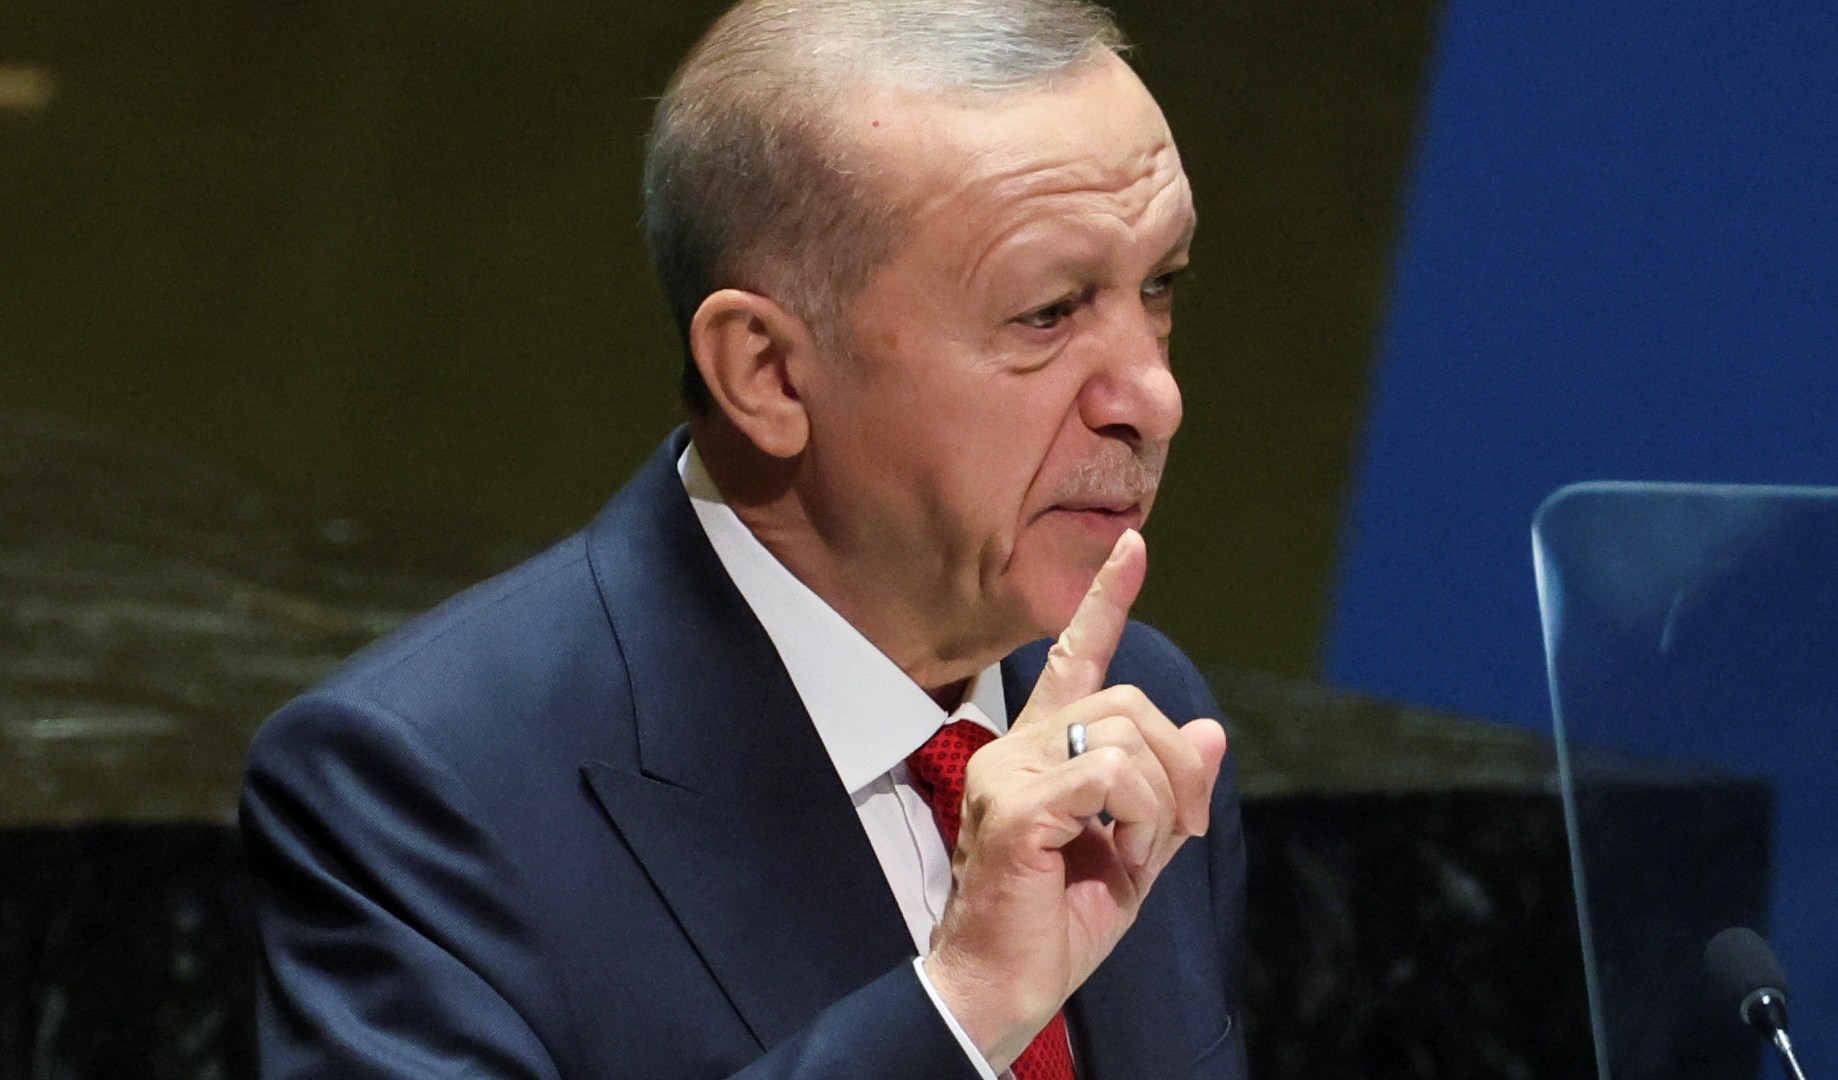 أردوغان يتوعد بمعاقبة متورطين في احتيال مصرفي | اقتصاد – البوكس نيوز